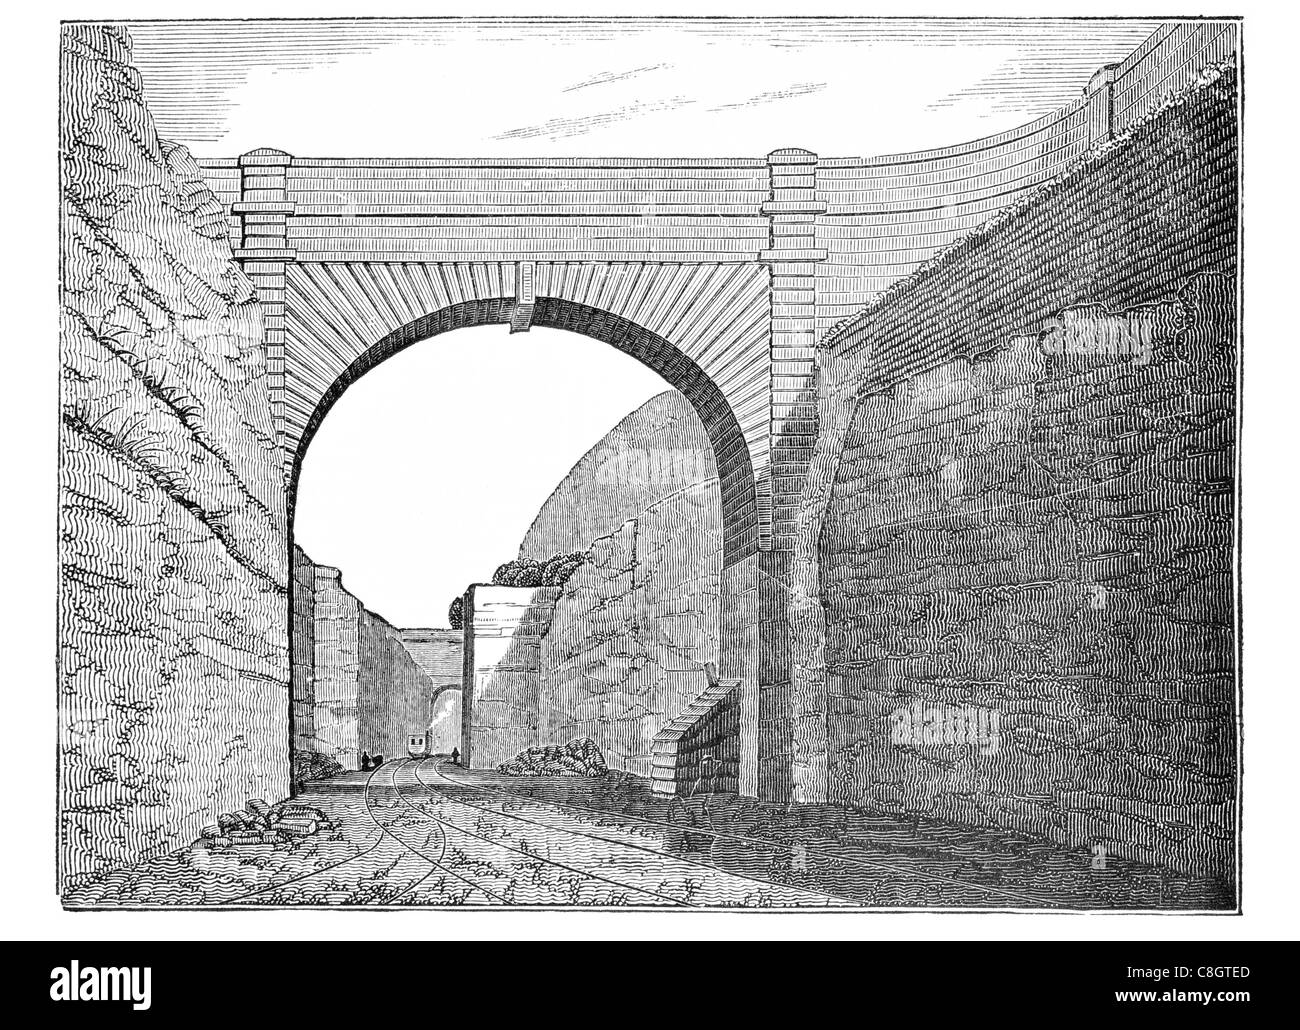 Olive Mount Schneiden von Liverpool und Manchester Railway Steam Locomotive Bau Baugrube ausgehoben Brückenbogen Stockfoto